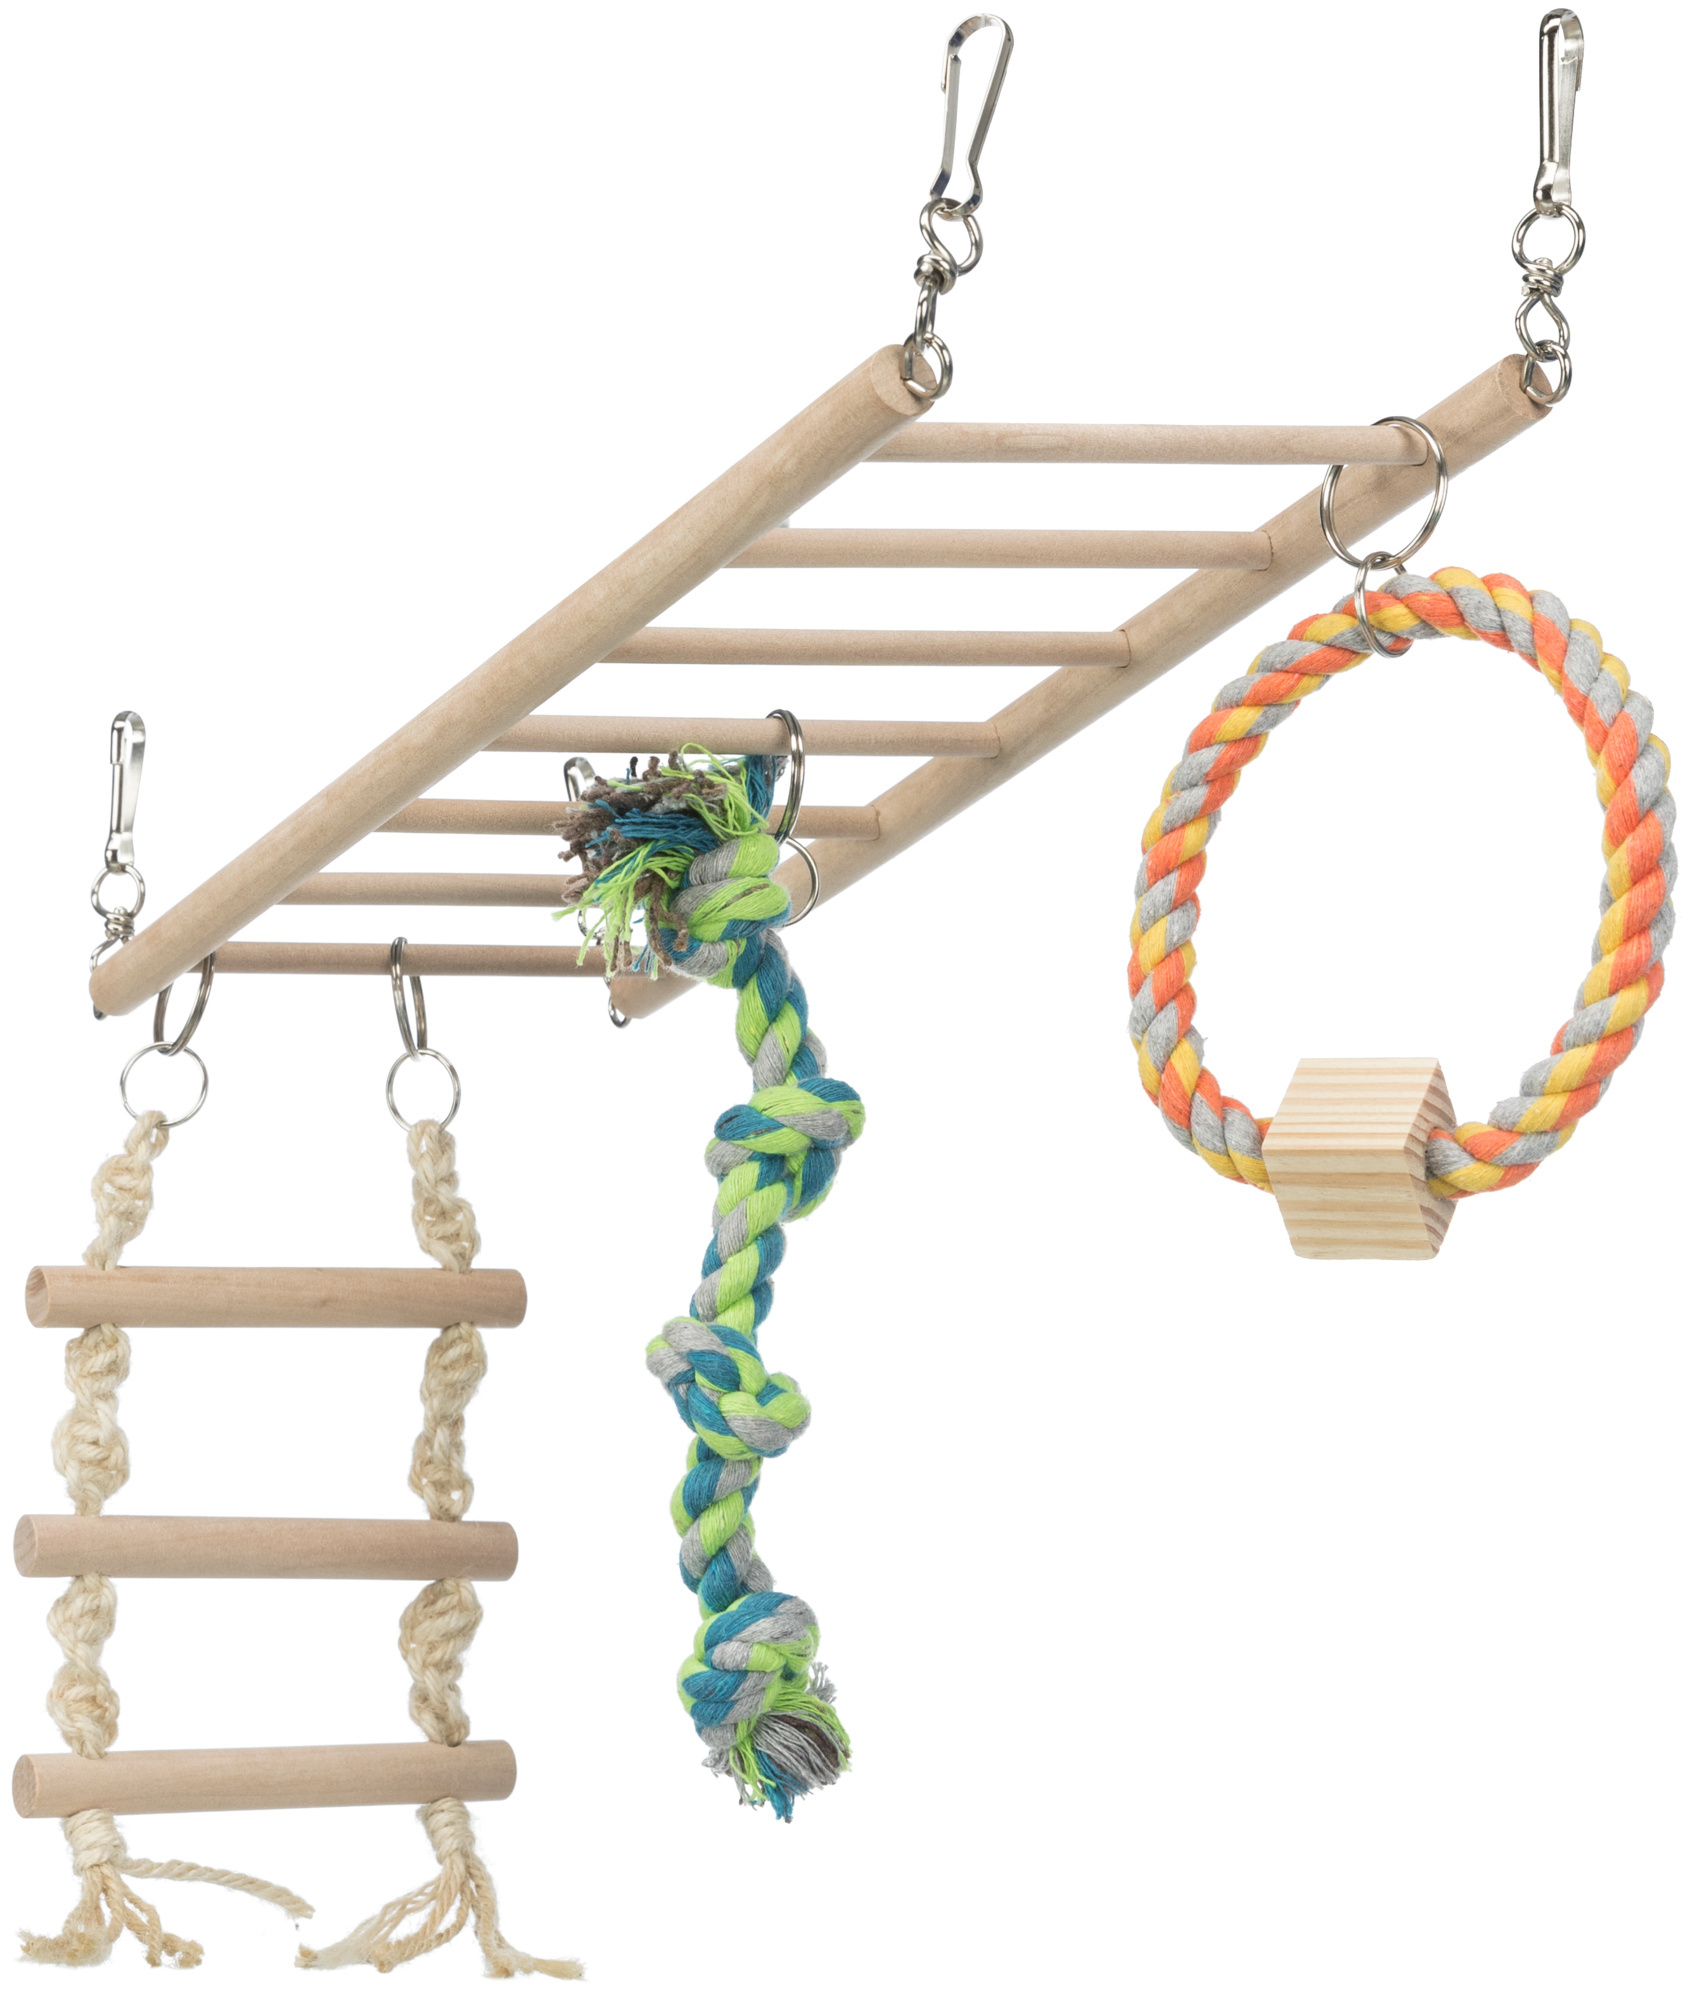 Ponte / Escada suspensa com cordas para brincar